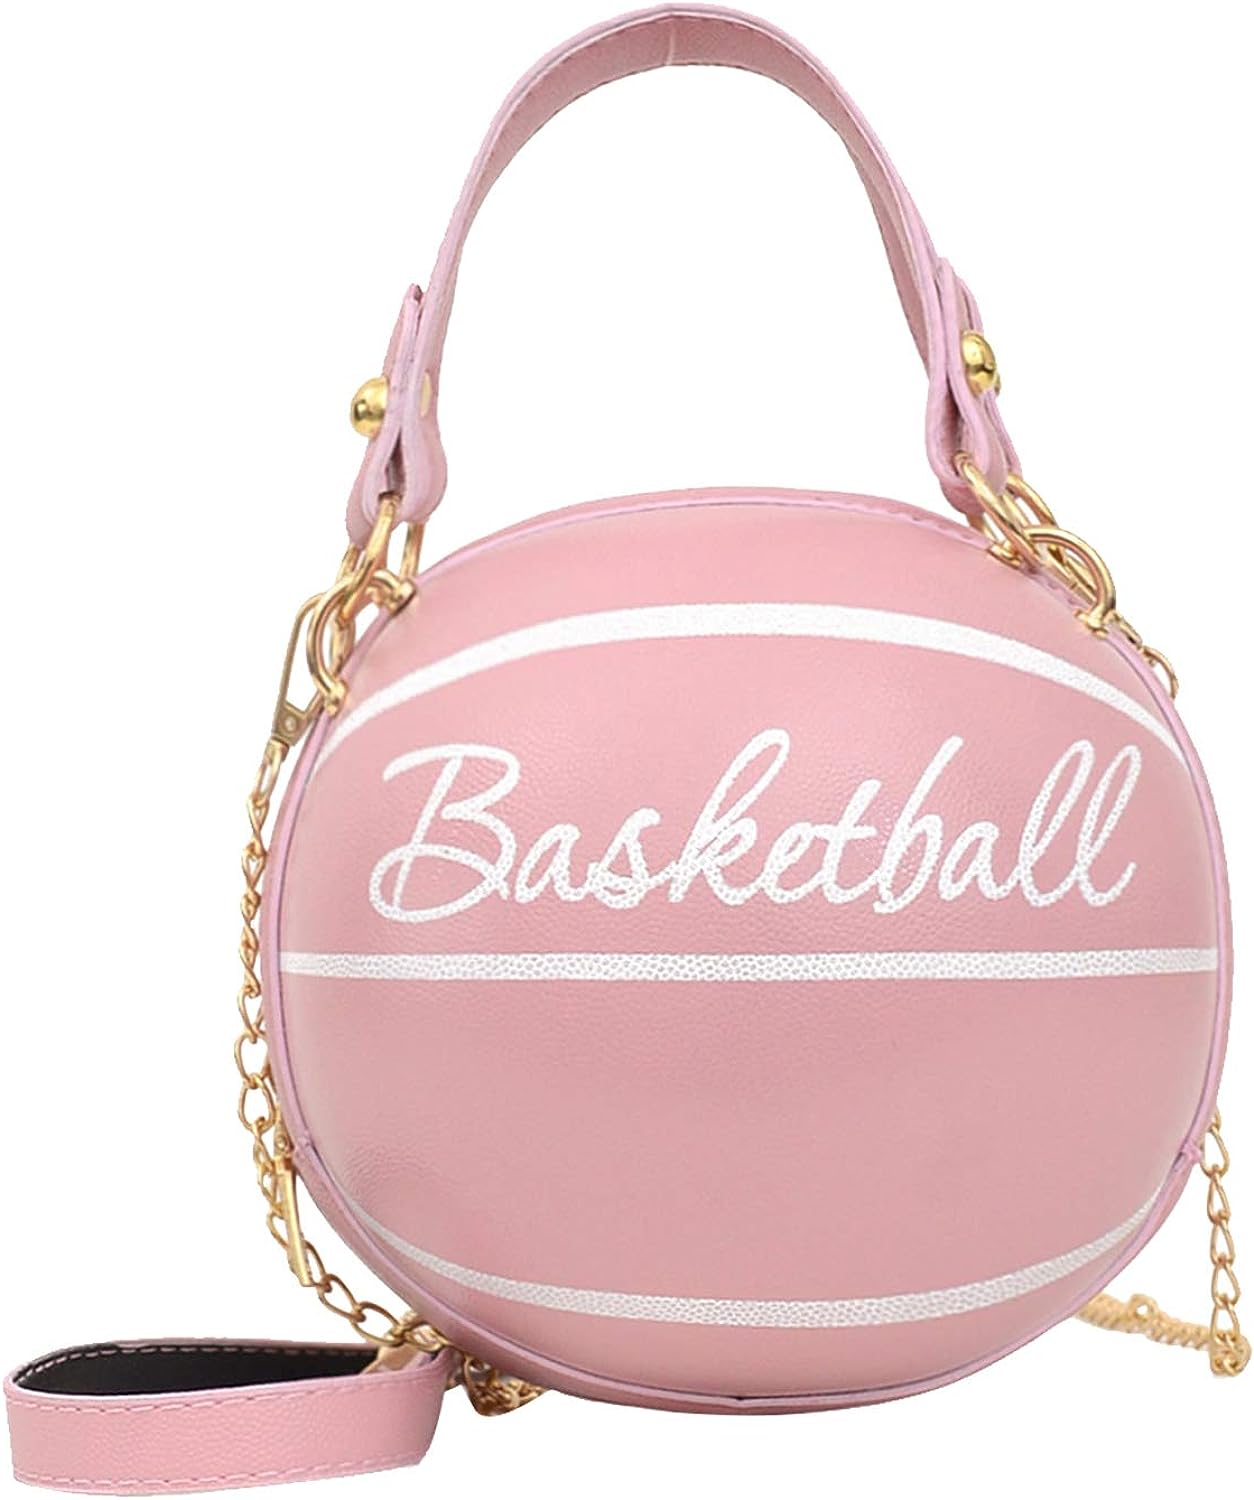 Basketball Purses Handbags, Basketball Handbags Women